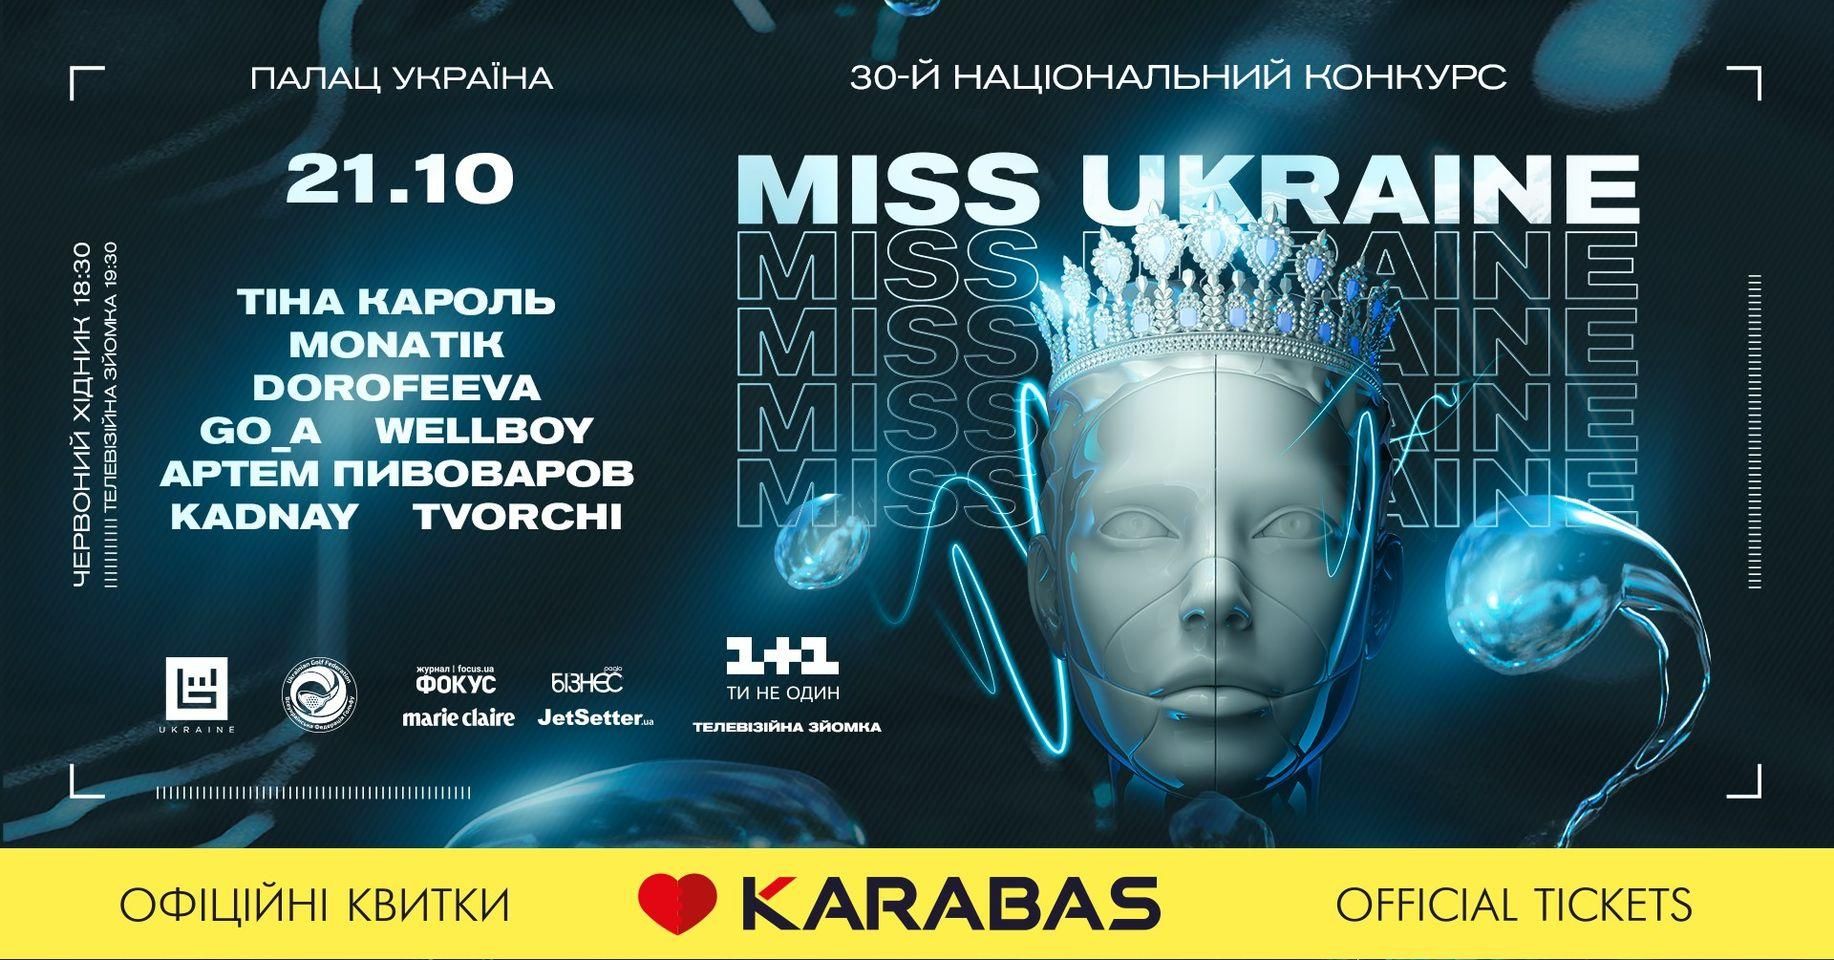 На конкурсе "Мисс Украина" выступят украинские звезды